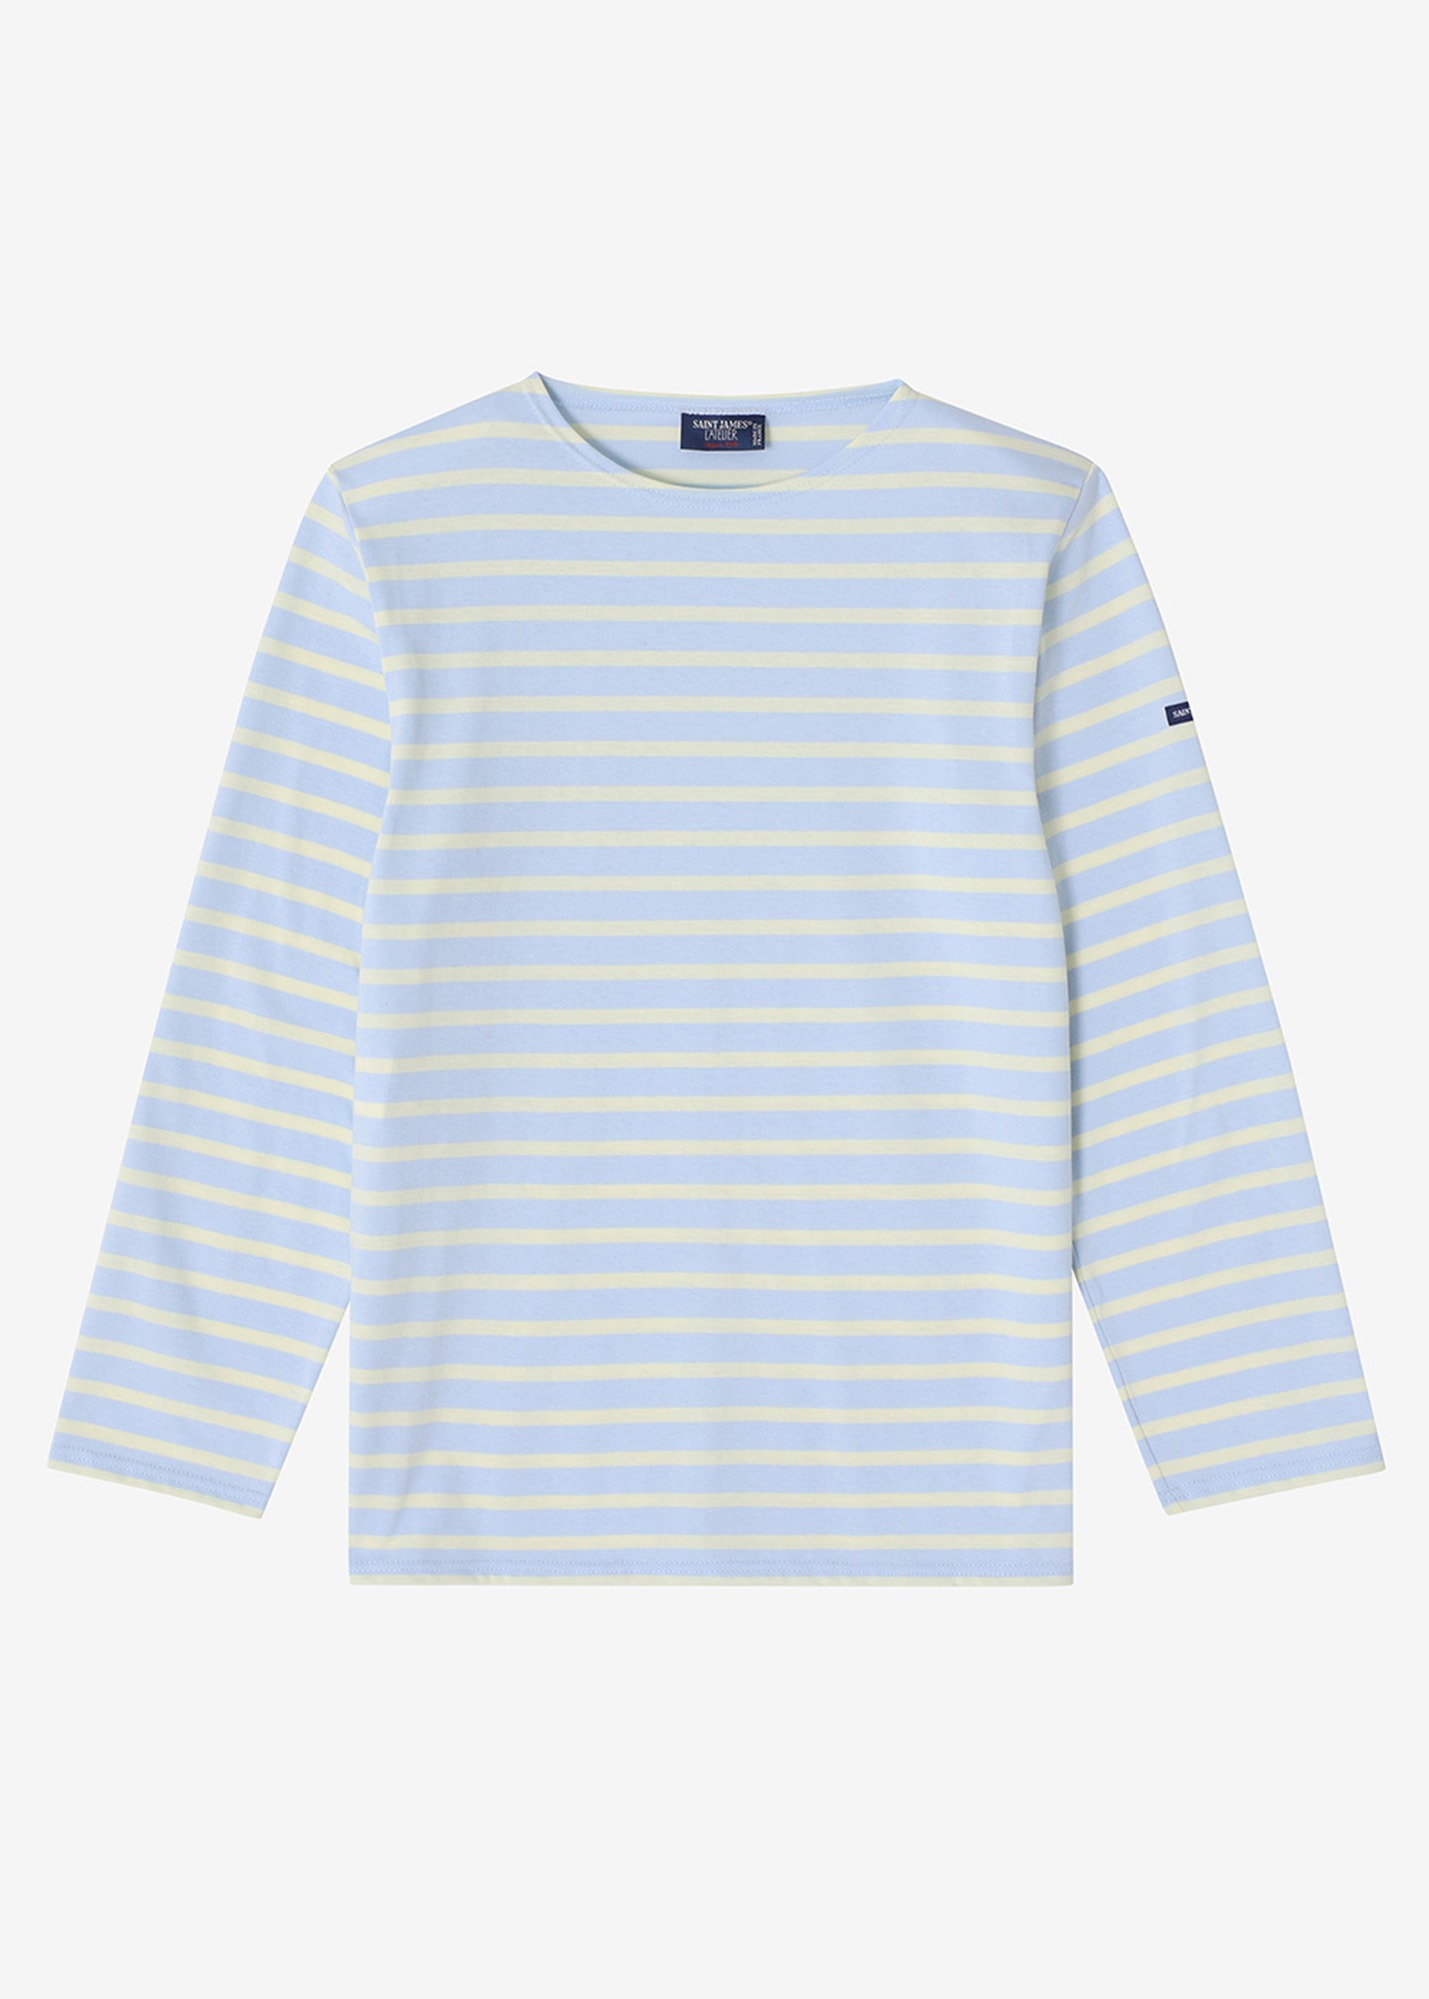 세인트제임스 긴팔 티셔츠 MINQUIERS 18 T-SHIRT (SKY BLUE)